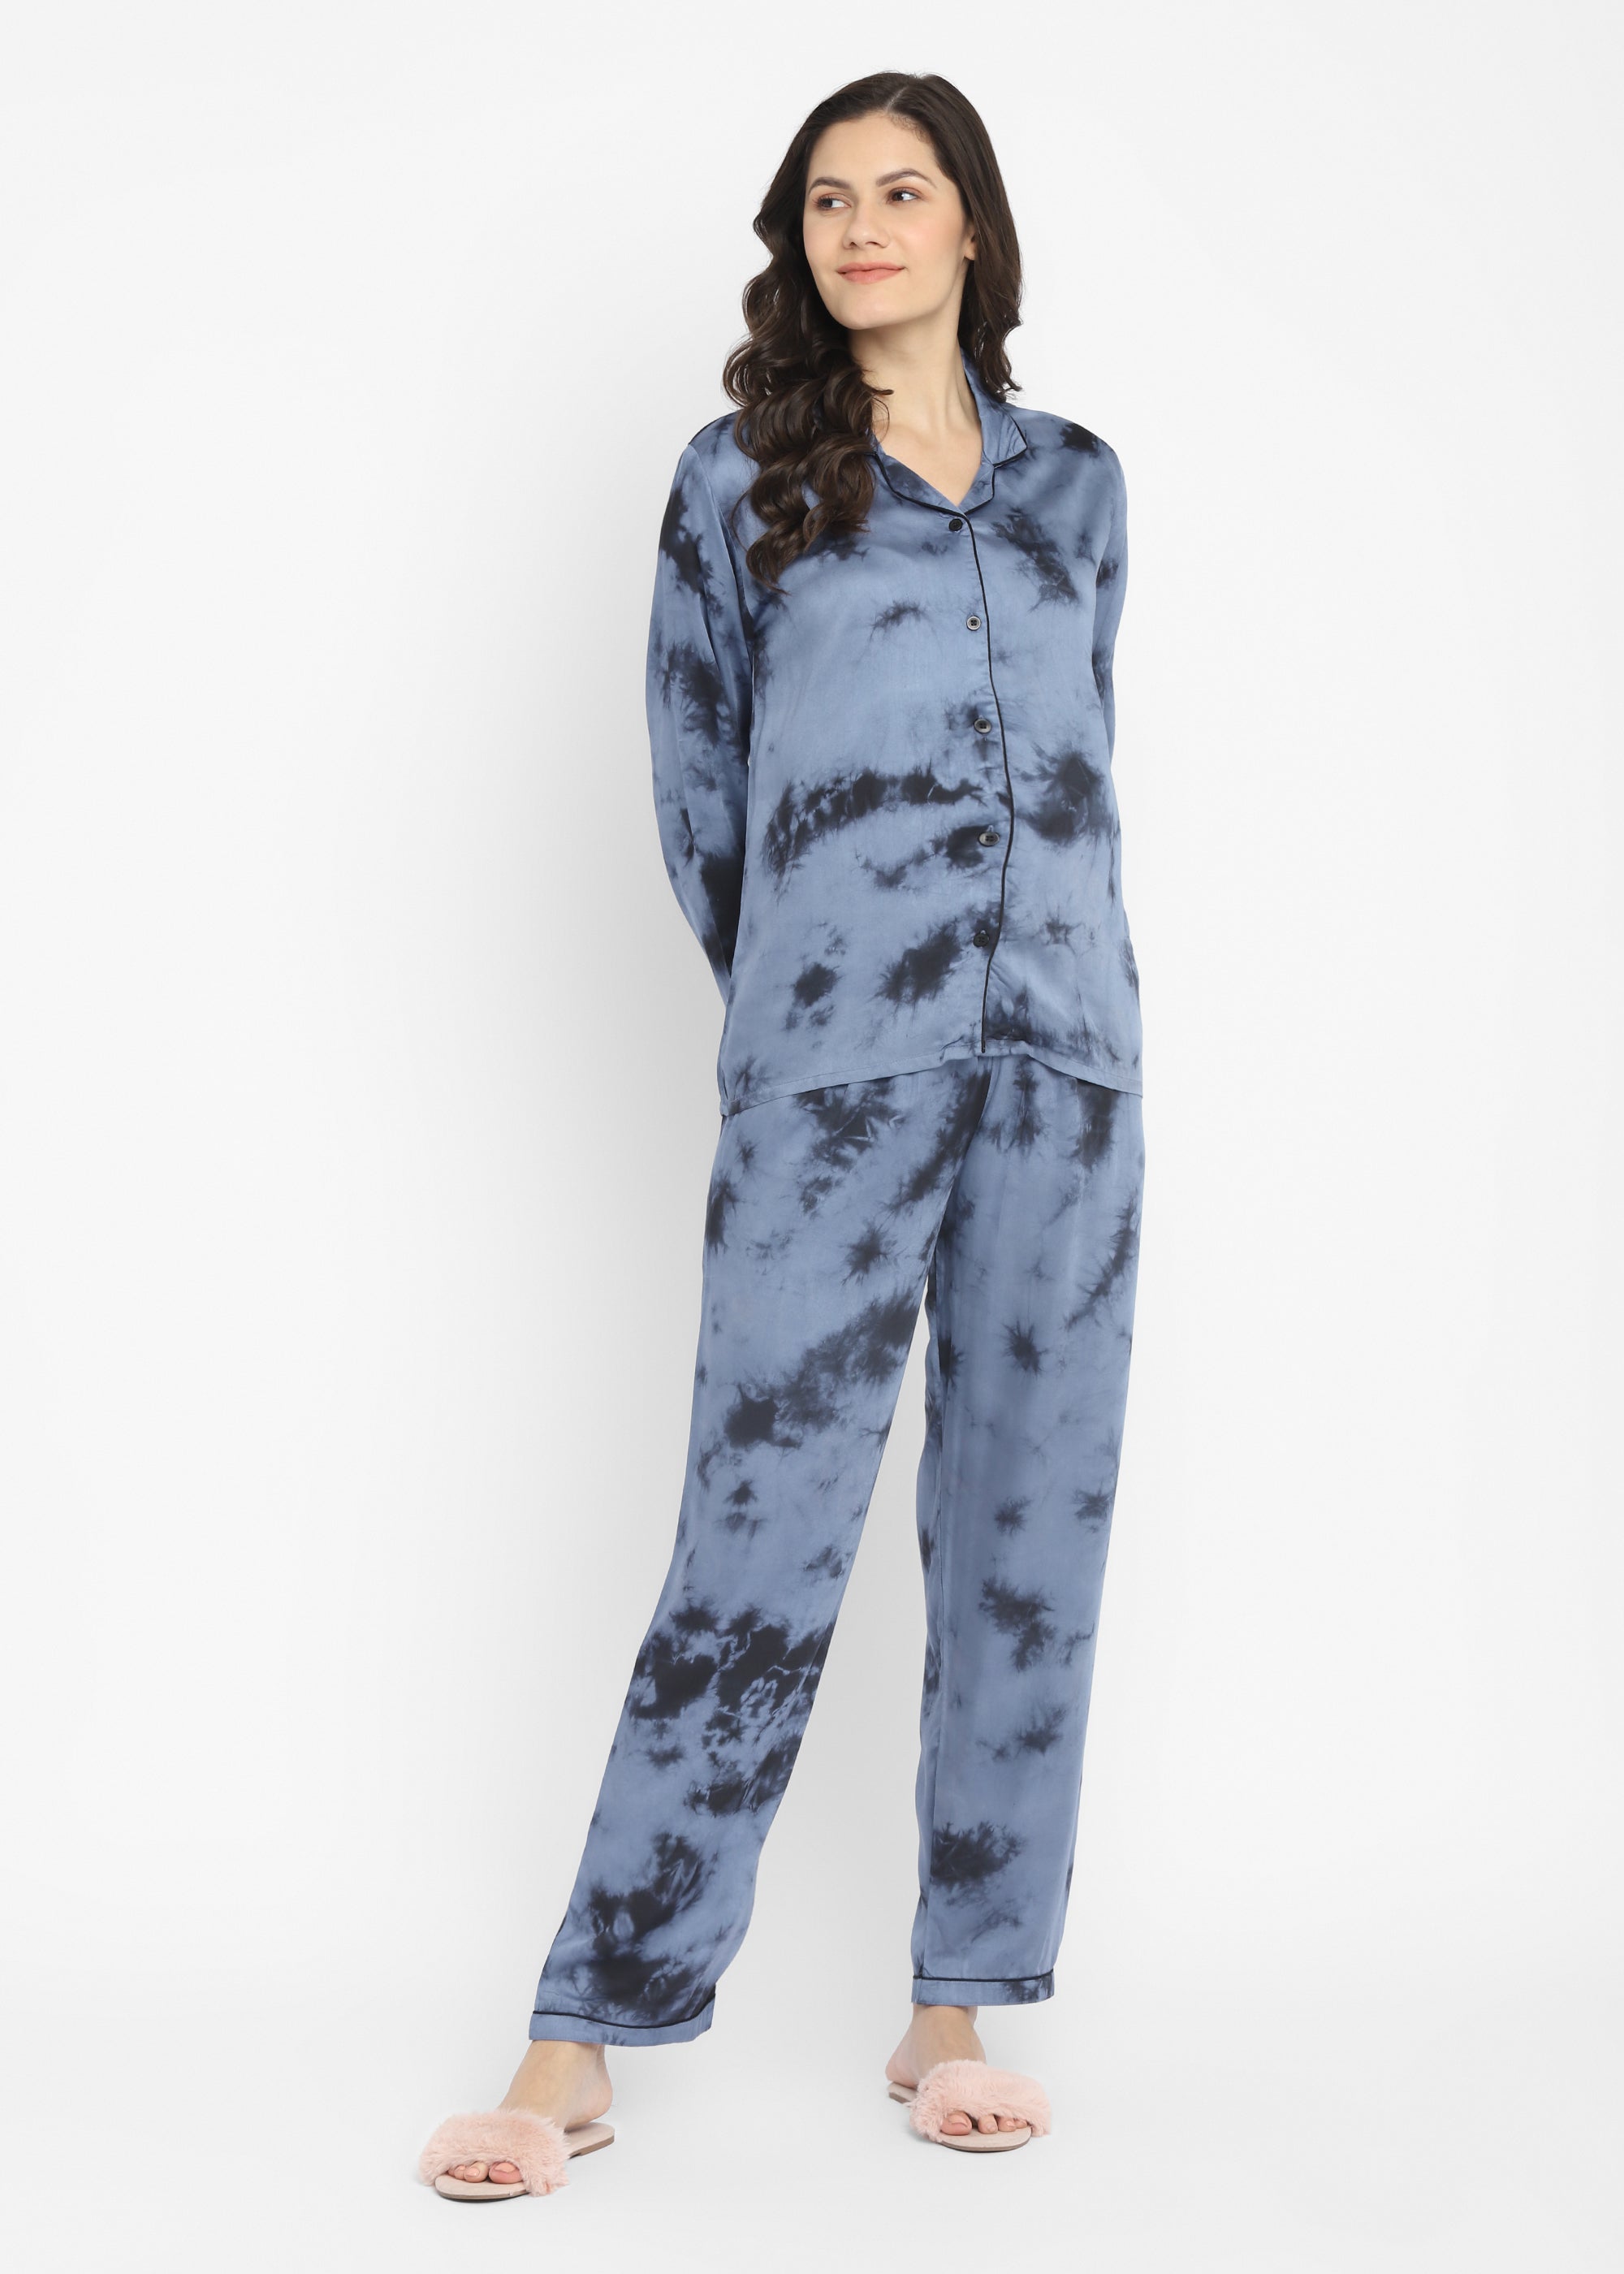 Ultra Soft Dark Grey Tie-Dye Modal Satin Long Sleeve Women's Night Suit - Shopbloom